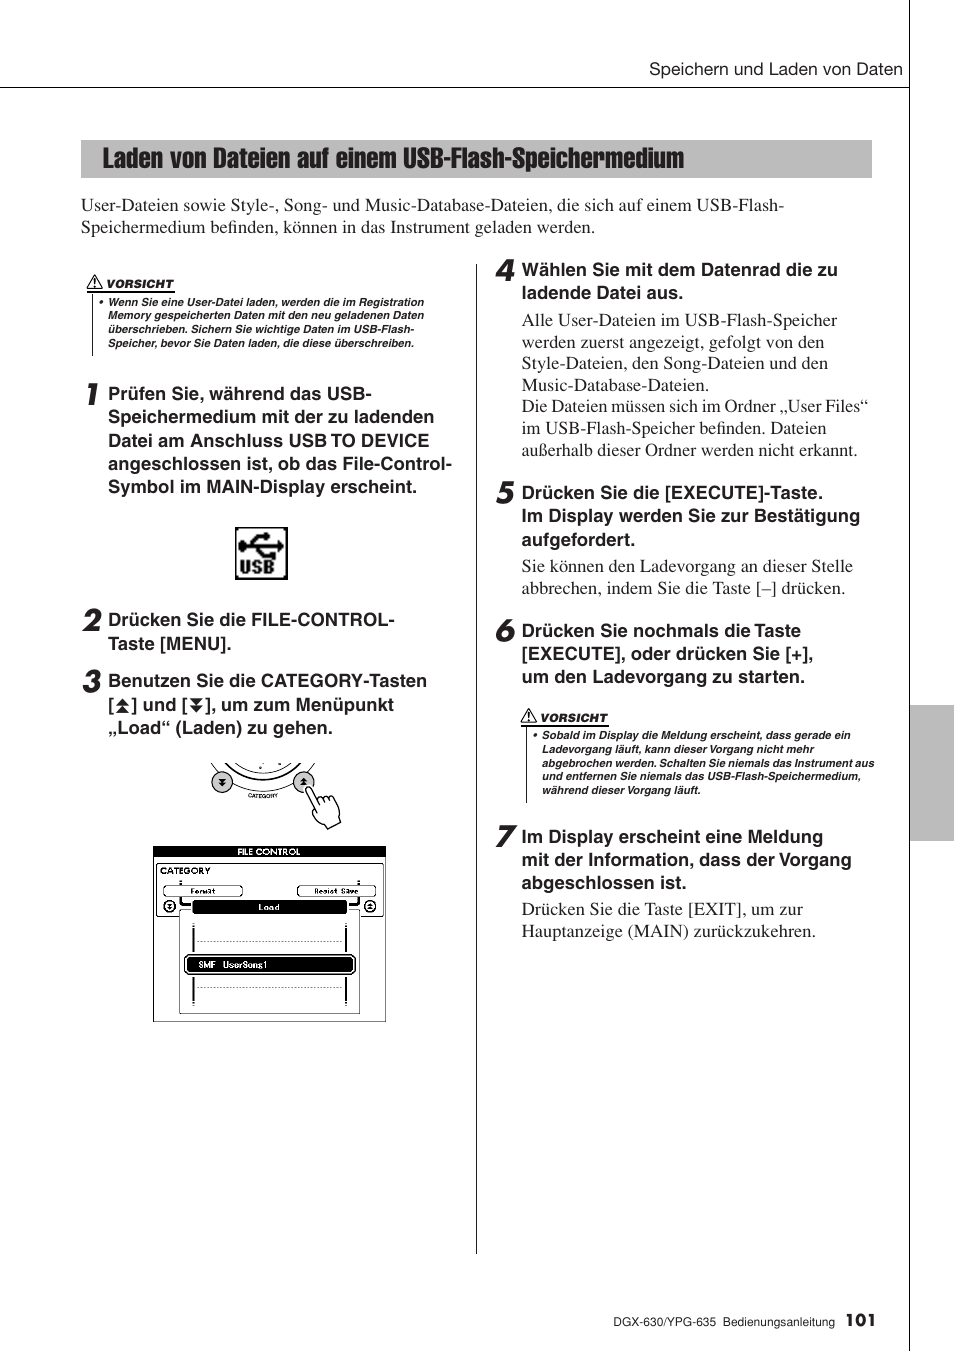 Laden von dateien auf einem usb-flash, Speichermedium | Yamaha DGX-630 Benutzerhandbuch | Seite 101 / 160